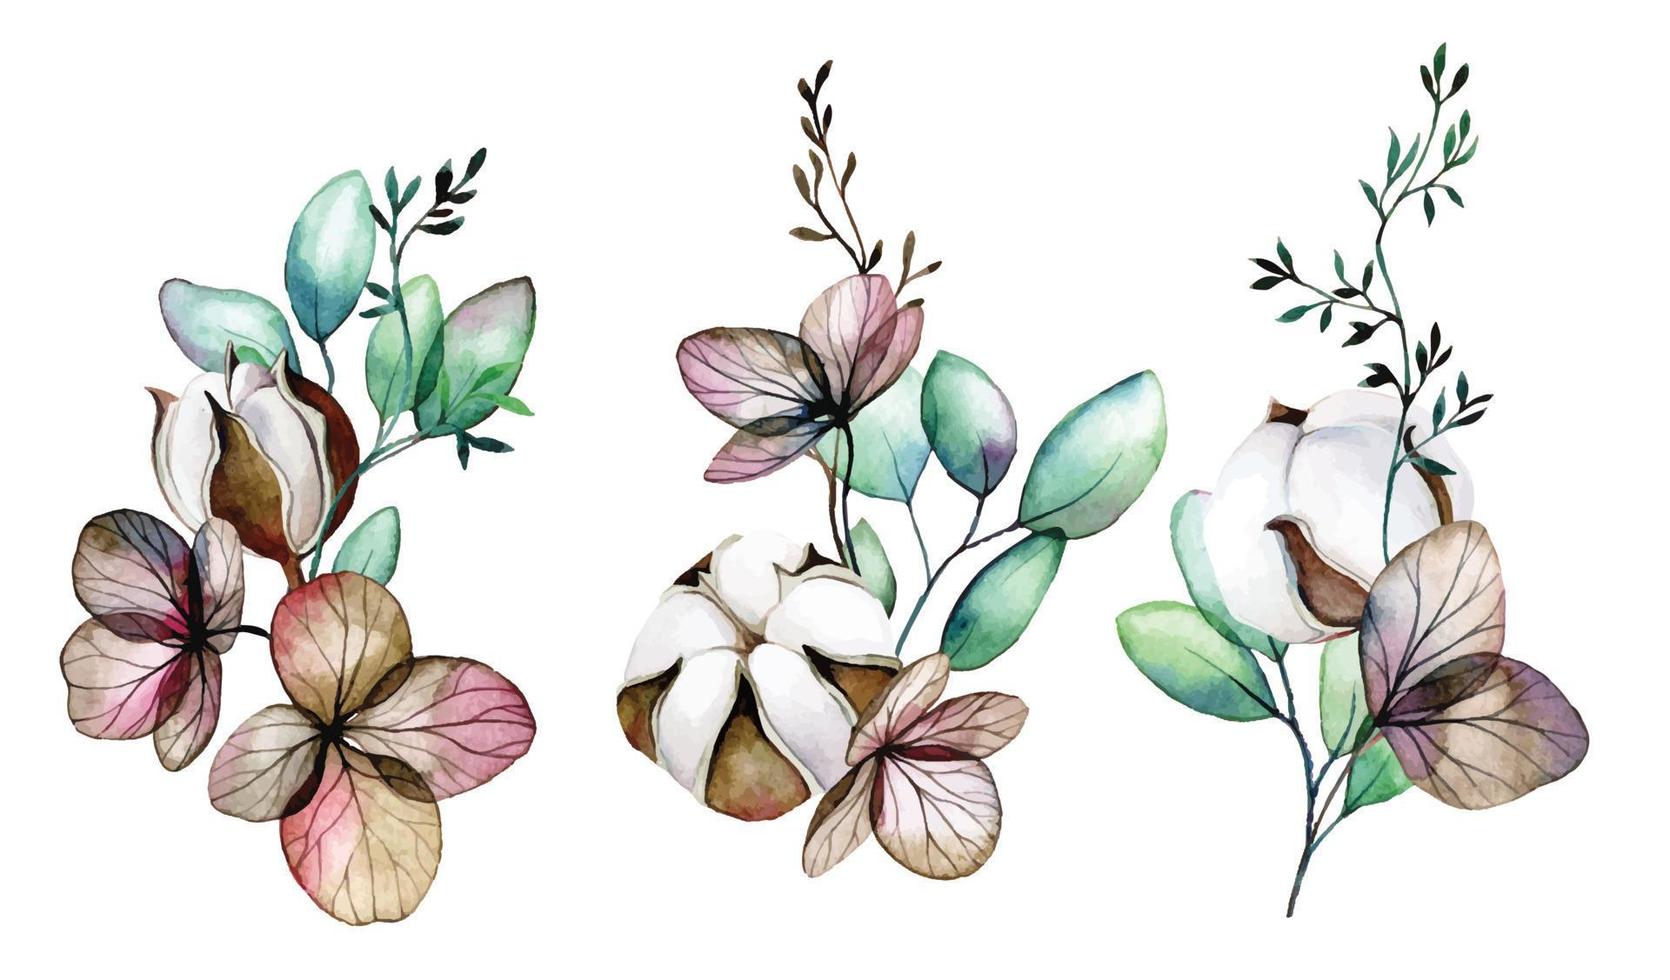 aguarela desenho. conjunto do buquês, composições do algodão flores, seco hortênsia flores e eucalipto folhas vetor